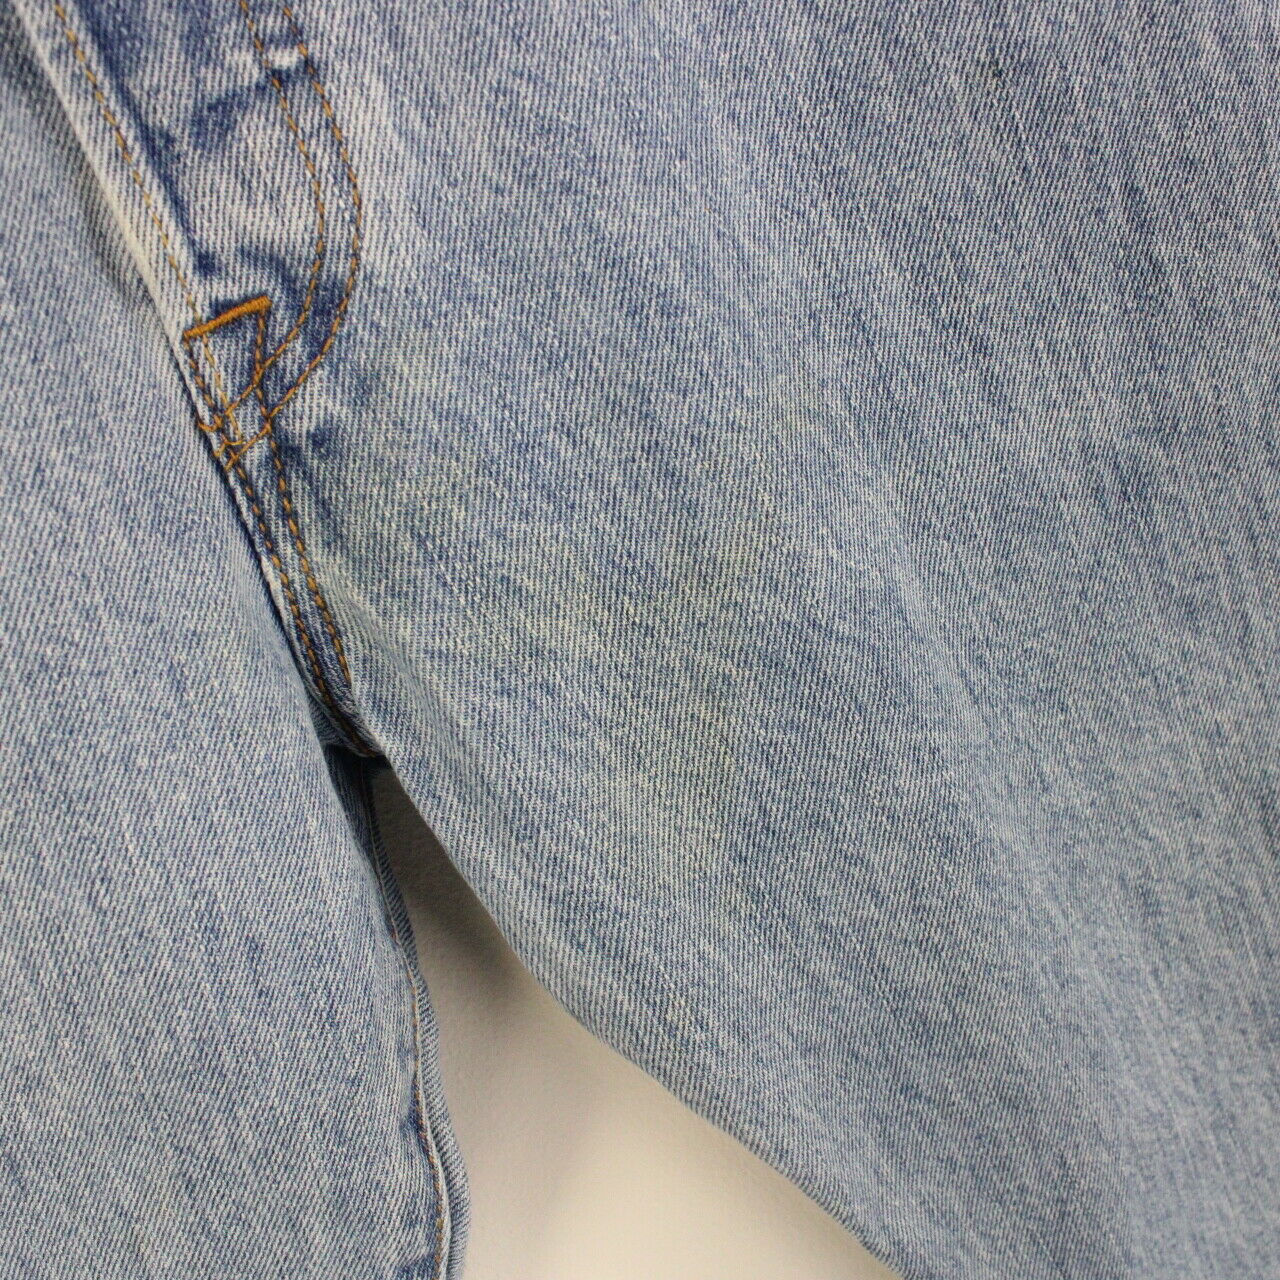 Mens LEVIS 501 Jeans Light Blue | W33 L28